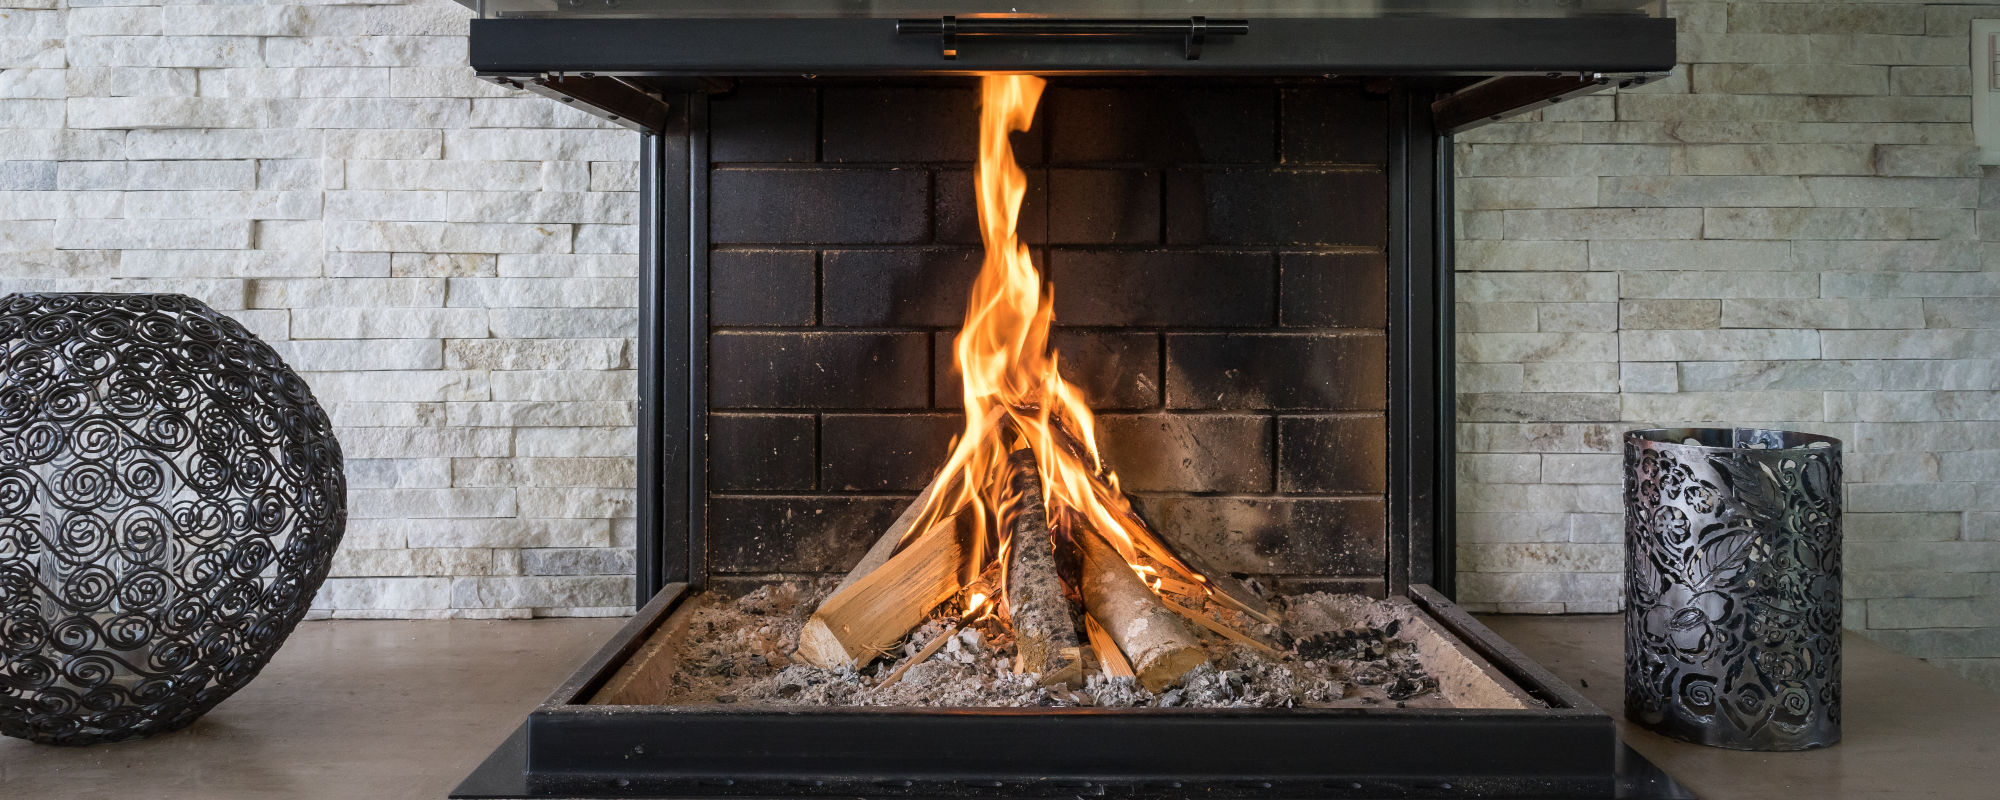 Comment allumer un feu avec du bois compressé ?